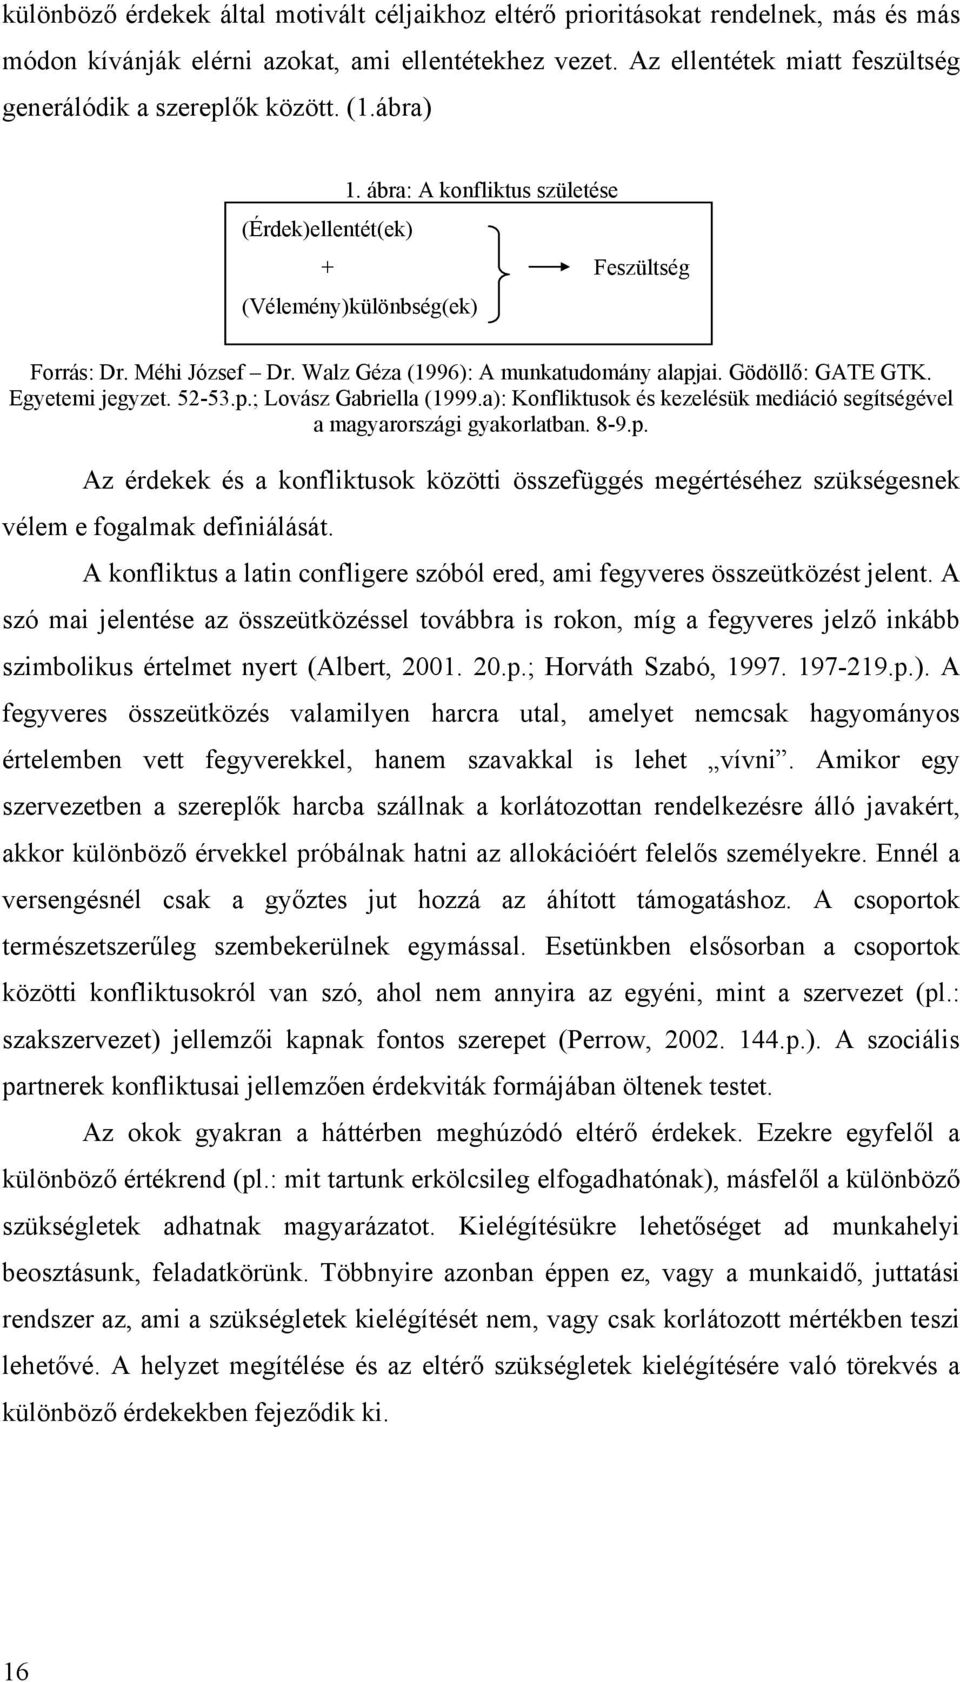 Walz Géza (1996): A munkatudomány alapjai. Gödöllő: GATE GTK. Egyetemi jegyzet. 52-53.p.; Lovász Gabriella (1999.a): Konfliktusok és kezelésük mediáció segítségével a magyarországi gyakorlatban. 8-9.